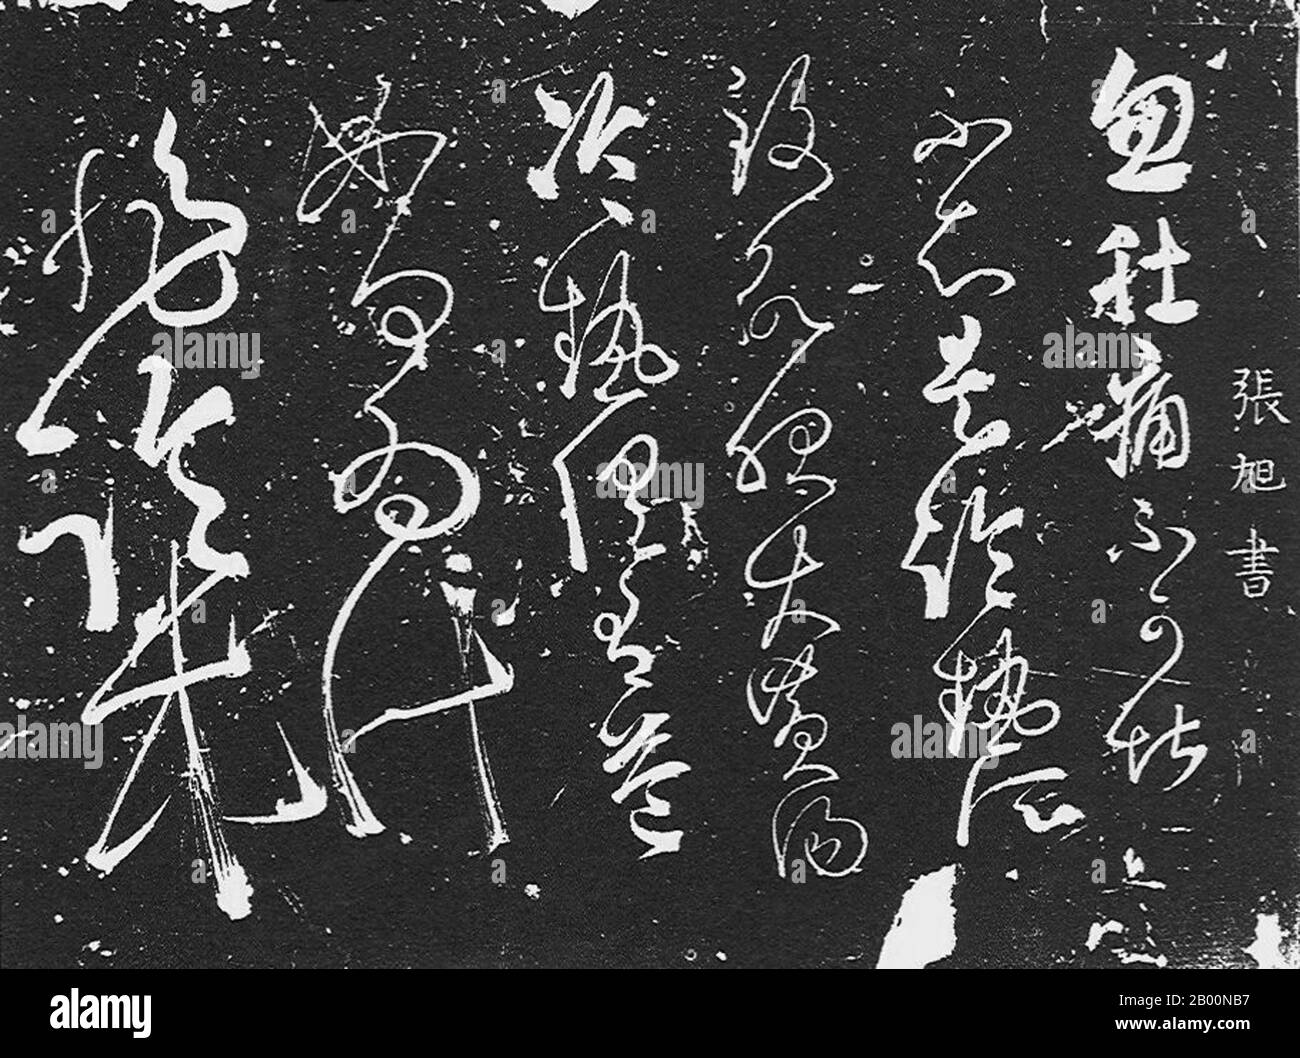 China: Chinesische Schrift (kursiv). Kalligraphie der Tang Dynastie, die Zhang Shui zugeschrieben wird (9. Jahrhundert). Als Urheber des Wild Cursive Style und Nichtkonformist im Geist handelte Zhang Shui ganz und gar gegen kalligraphische Konventionen und erhielt den Spitznamen "Crazy Zhang". Während berauscht, war er inspiriert und würde gehen, um seine wunderbare kursive Kalligraphie vor den Würdenträgern zu schaffen. Tang-Kaiser Wenzong (r. 809-840) betrachtete Zhang Shuis kursive Schrift zusammen mit Lee Bais Gedicht und Pei Mings Schwert als die "drei exquisiten Talente der Tang-Dynastie". Stockfoto